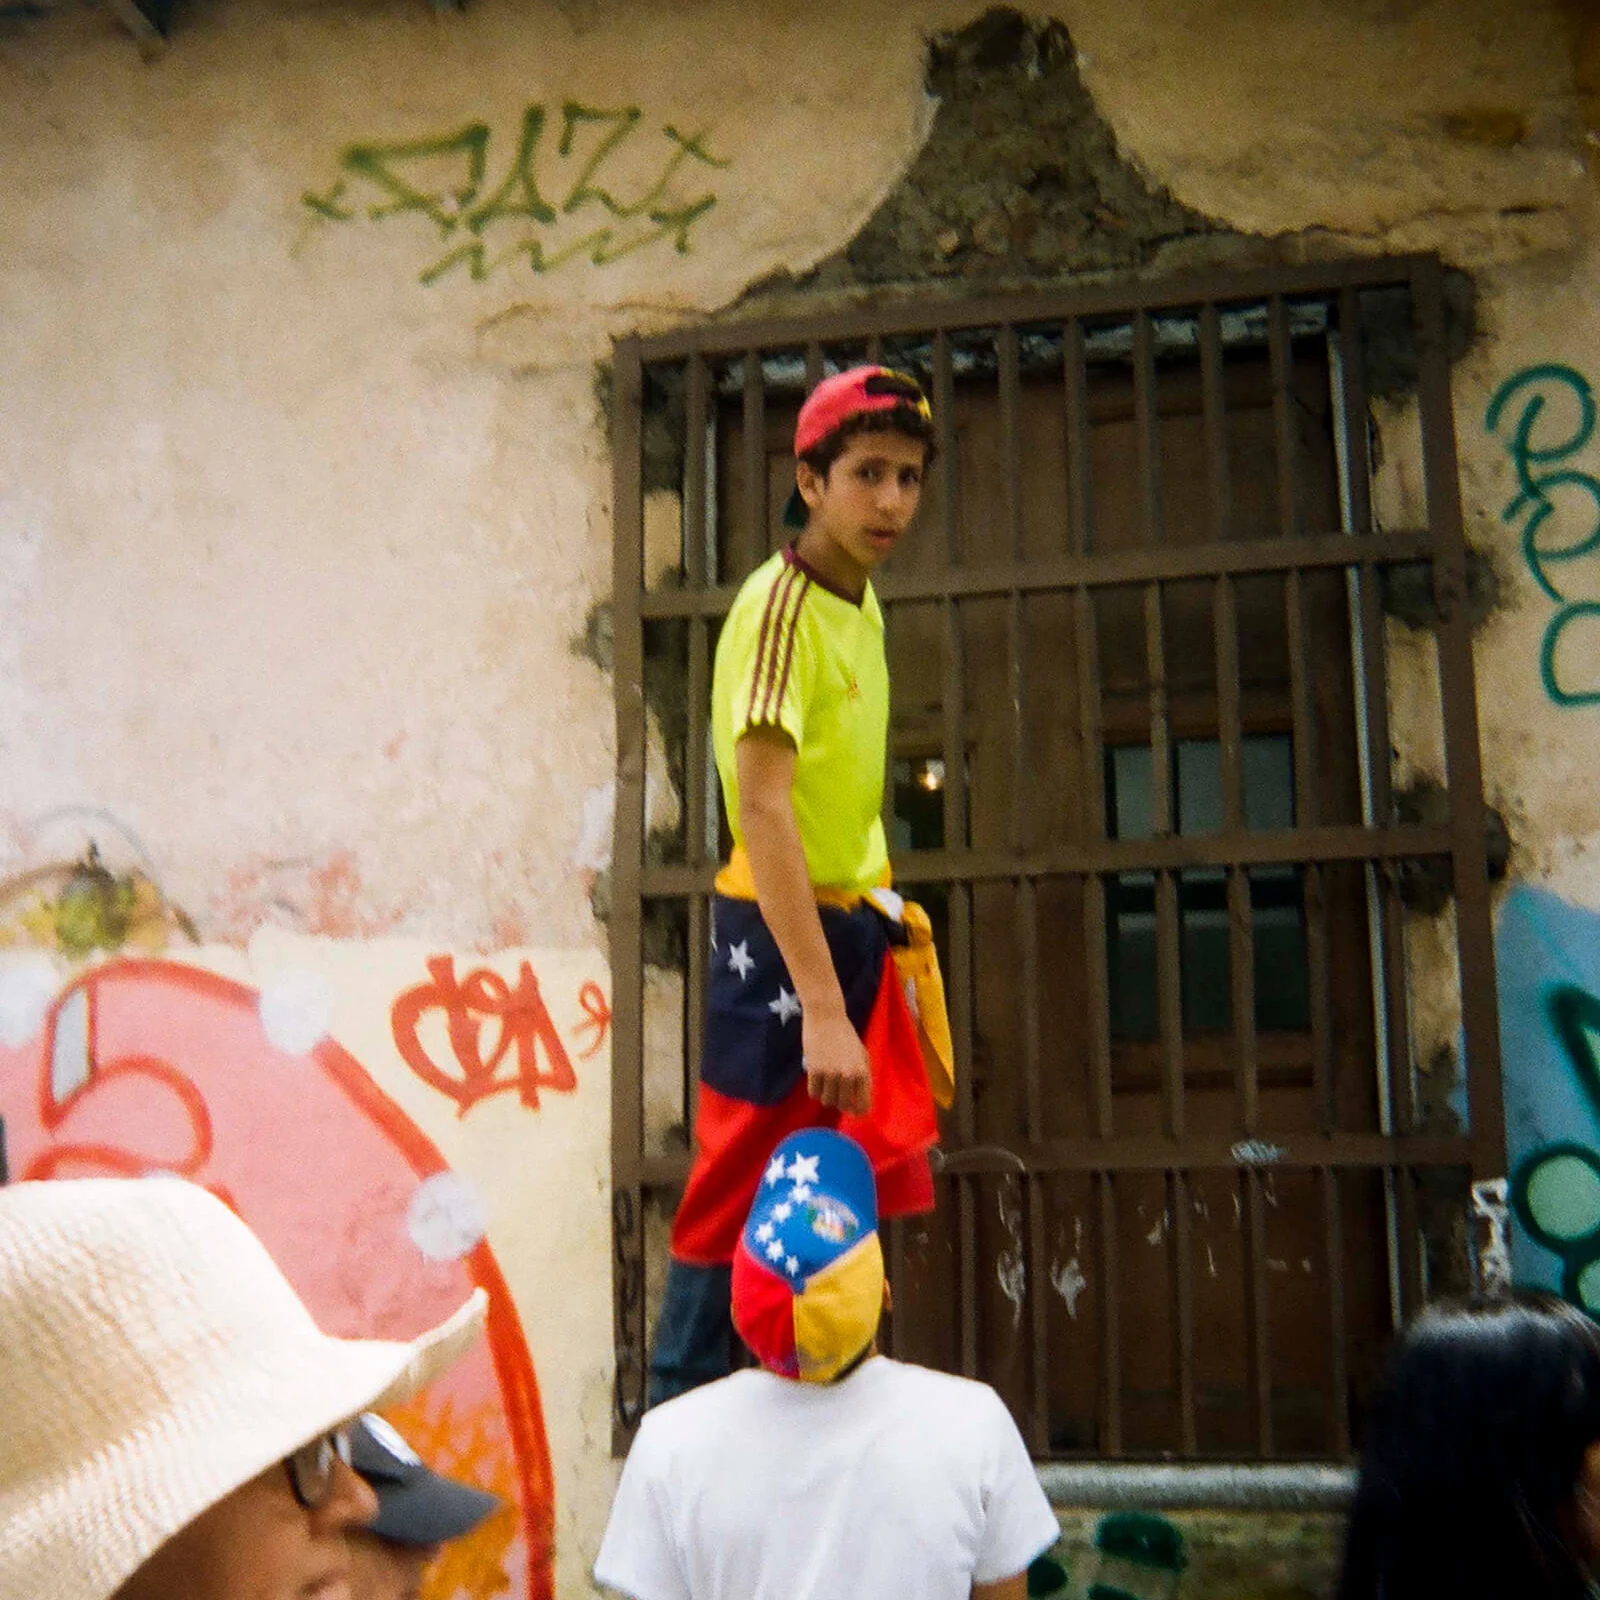 Muchacho Con Bandera En La Cintura (Boy With Flag Around His Waist)